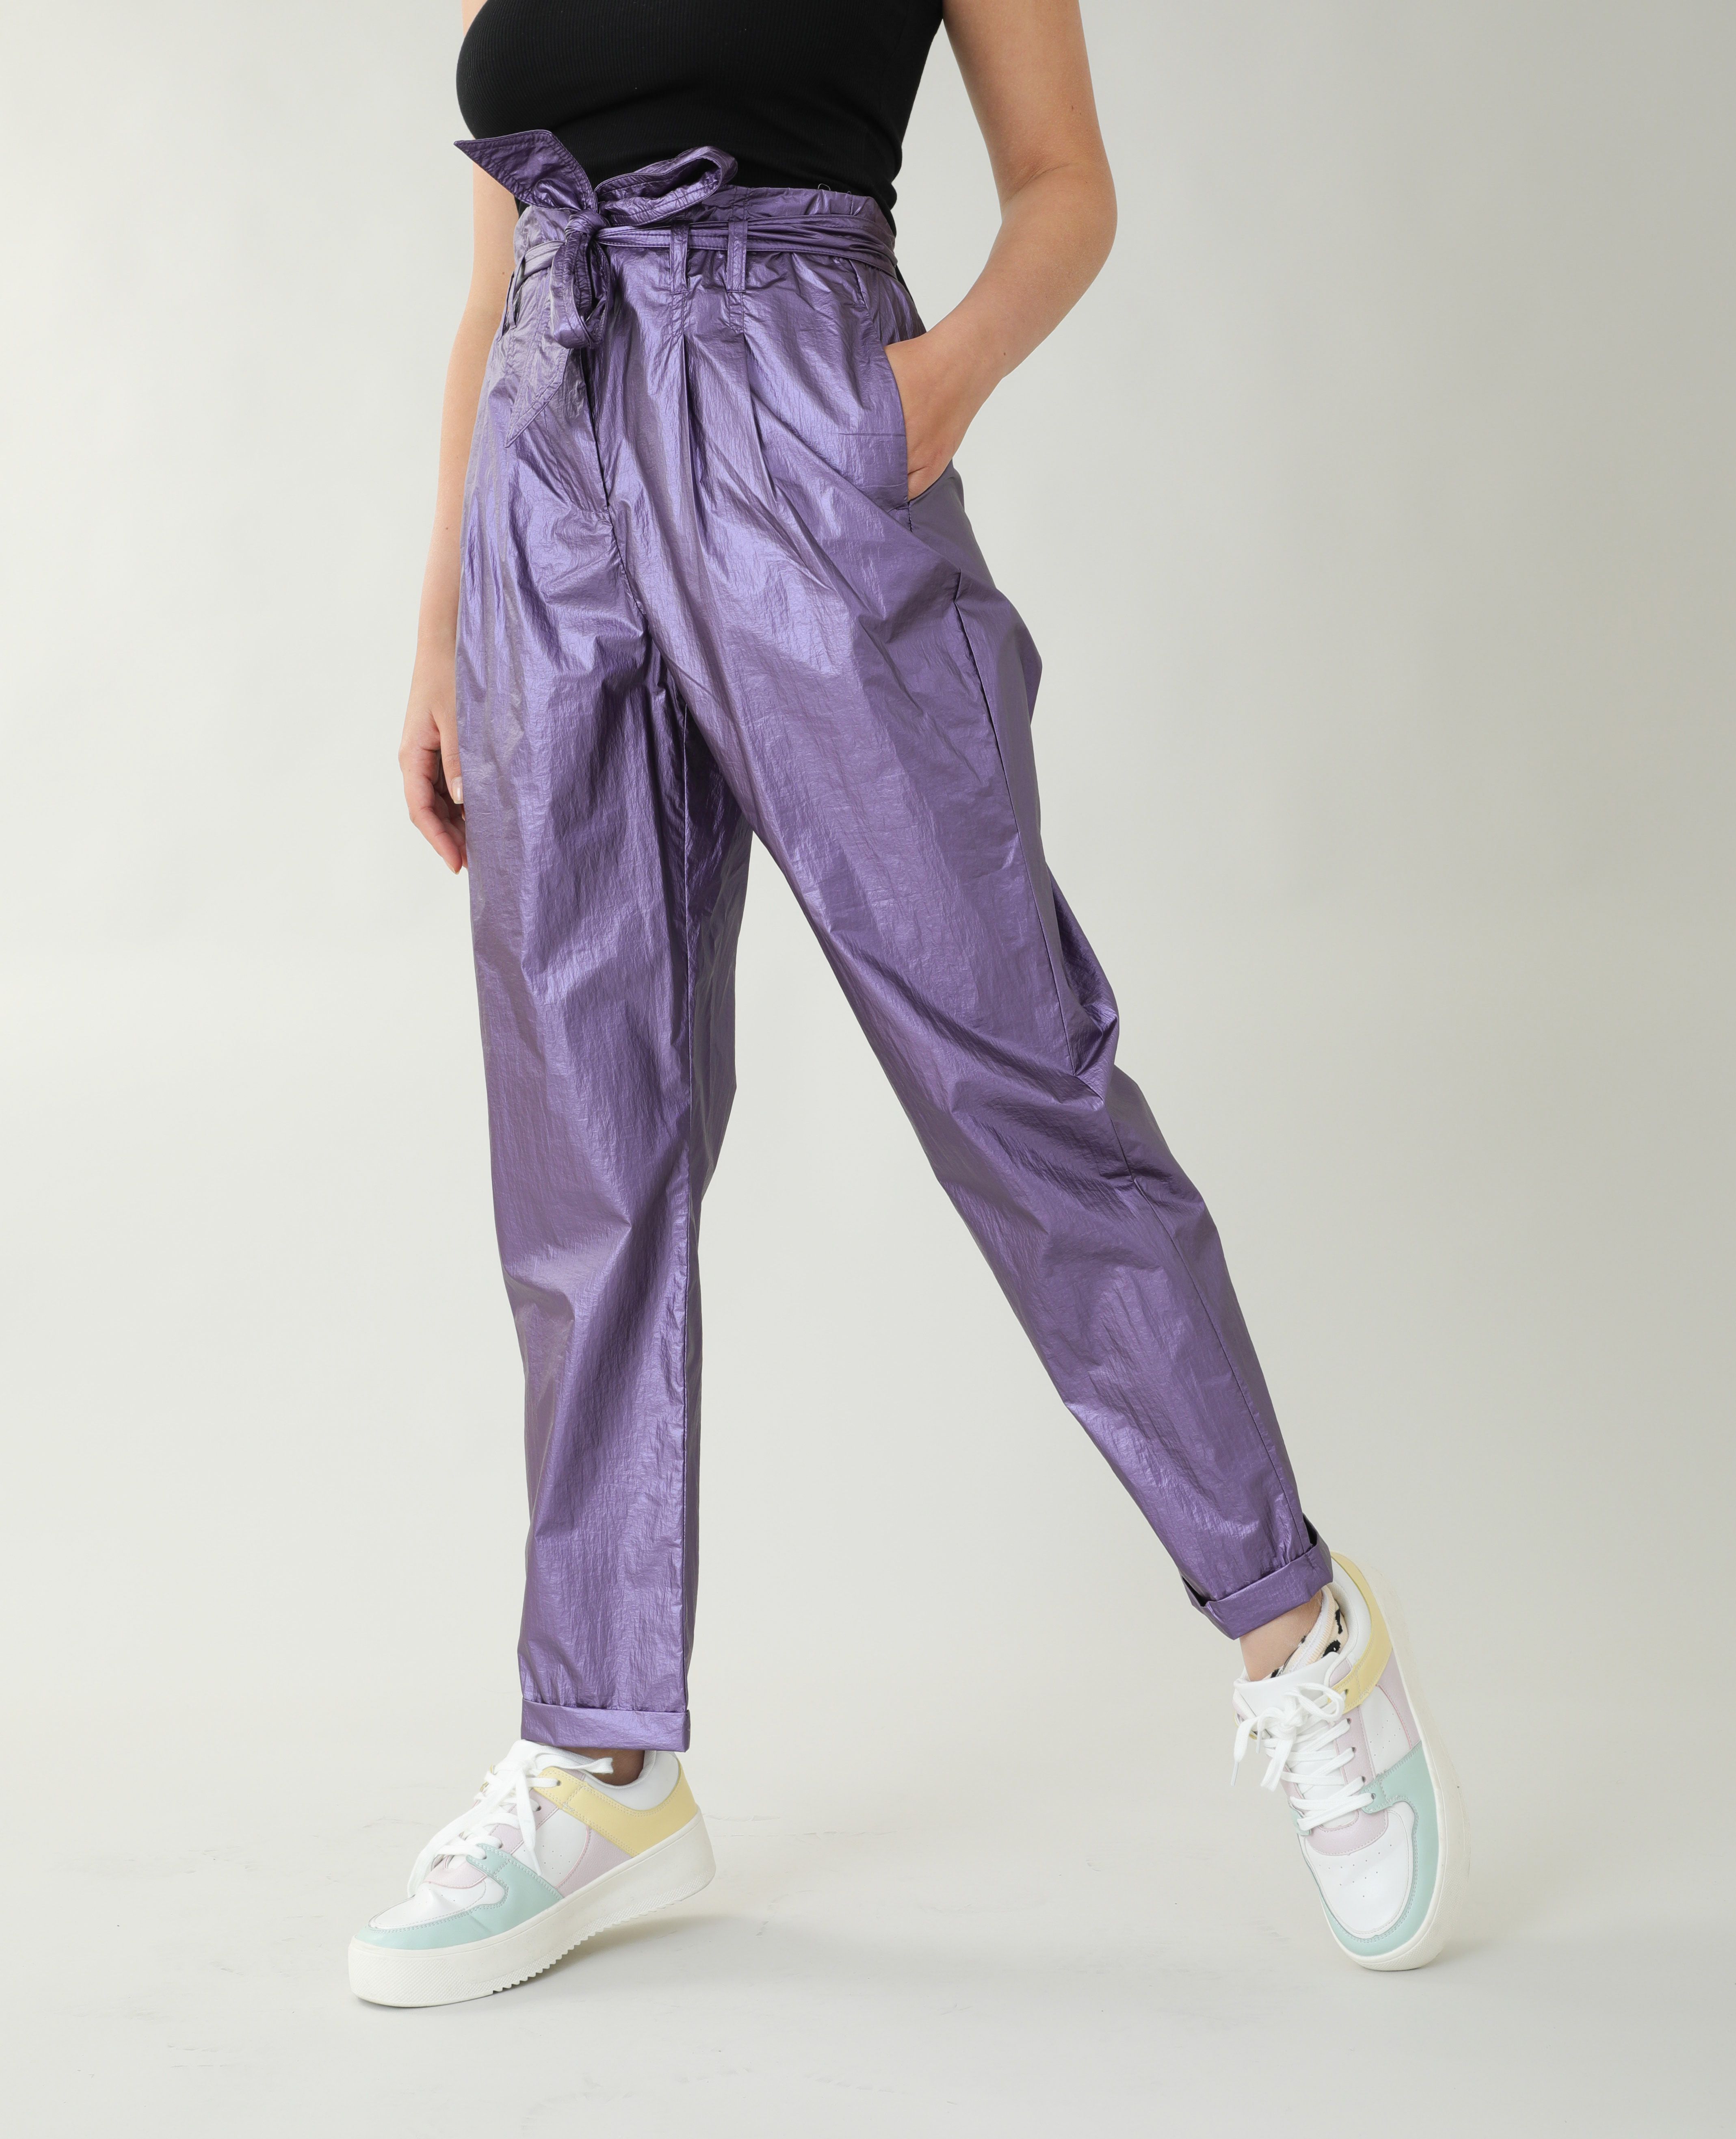 Pantalon irisé lilas - Pimkie